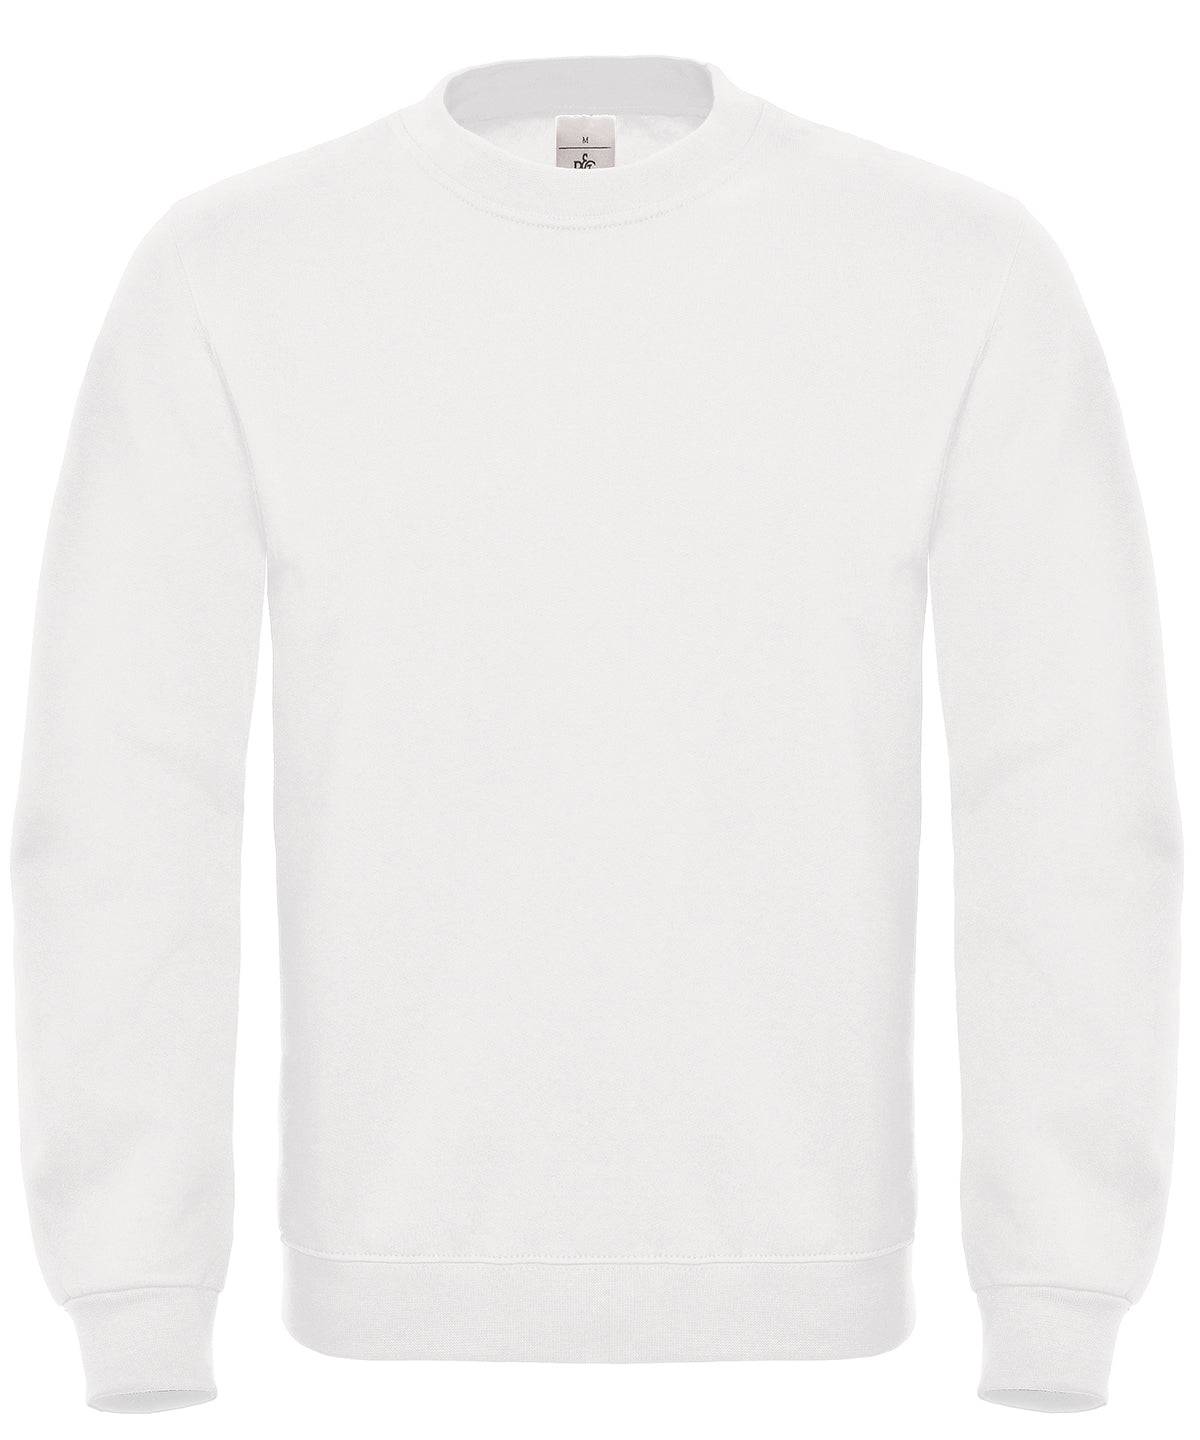 White - B&C ID.002 Sweatshirt